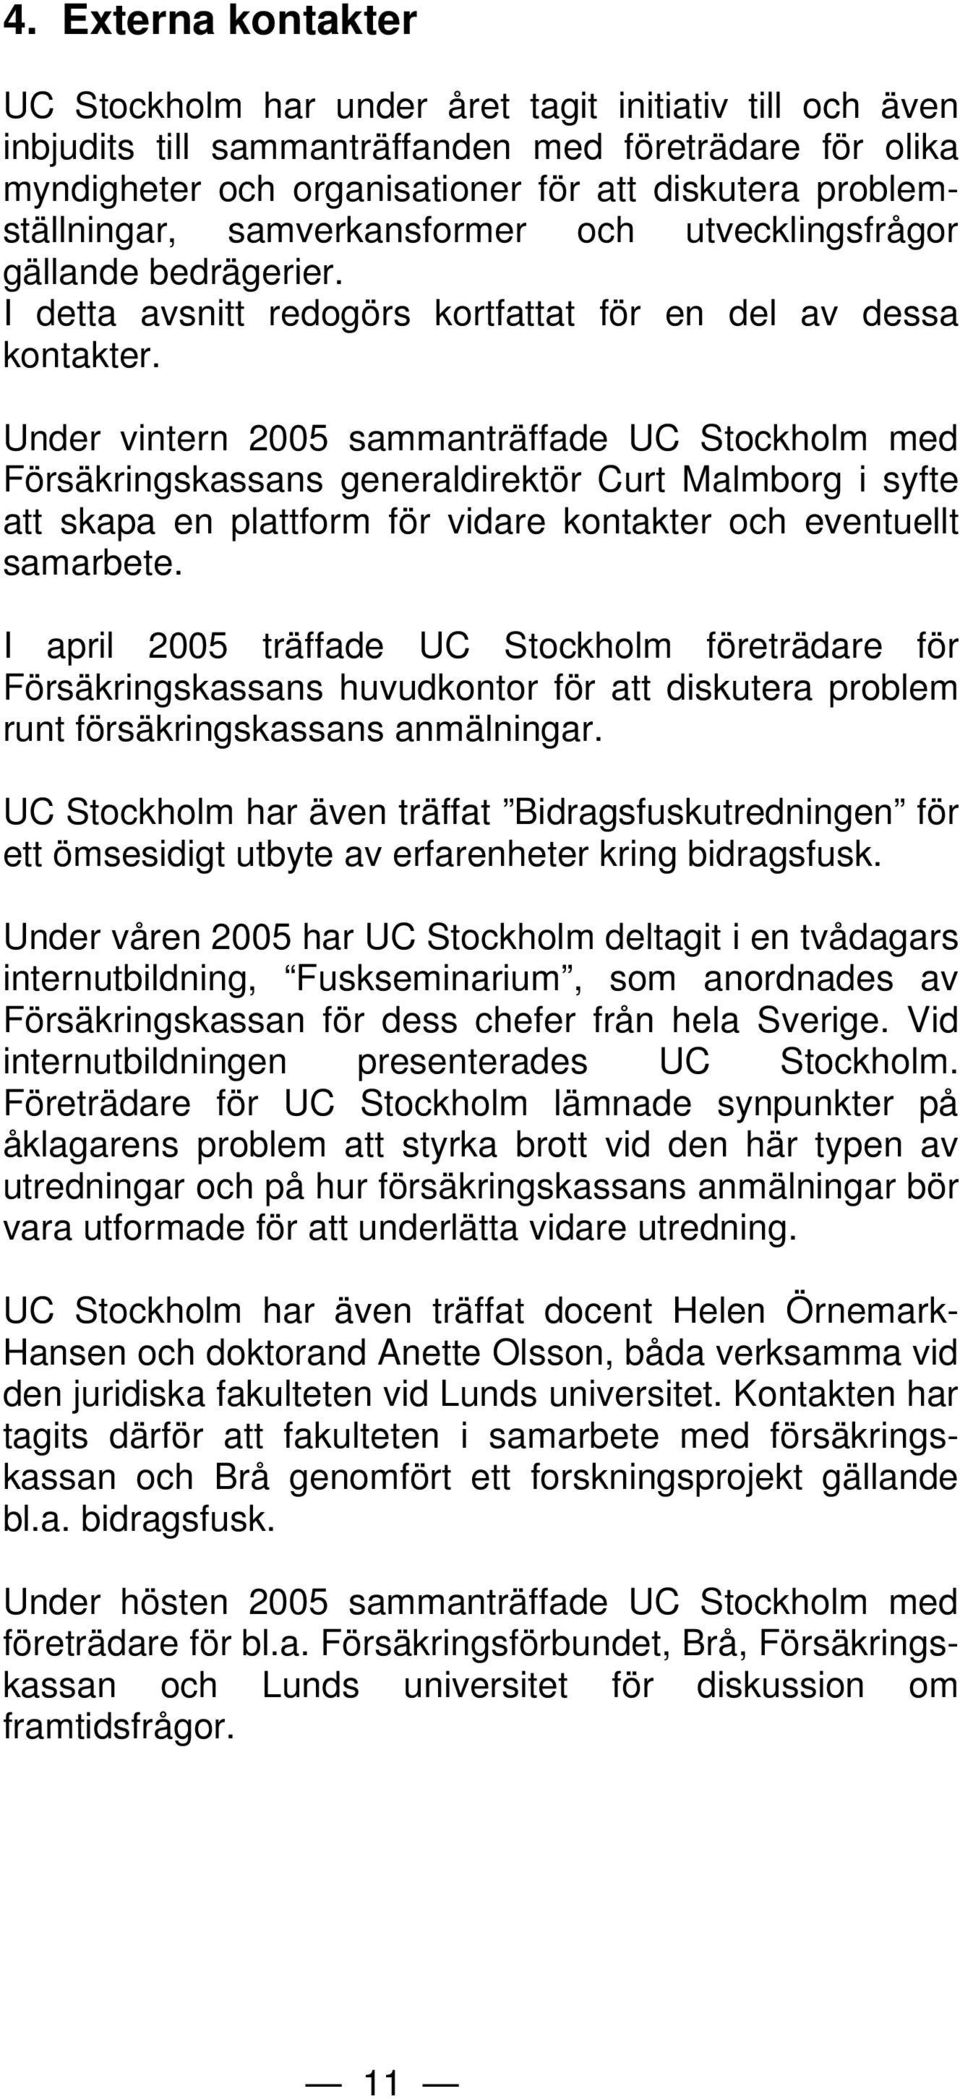 Under vintern 2005 sammanträffade UC Stockholm med Försäkringskassans generaldirektör Curt Malmborg i syfte att skapa en plattform för vidare kontakter och eventuellt samarbete.